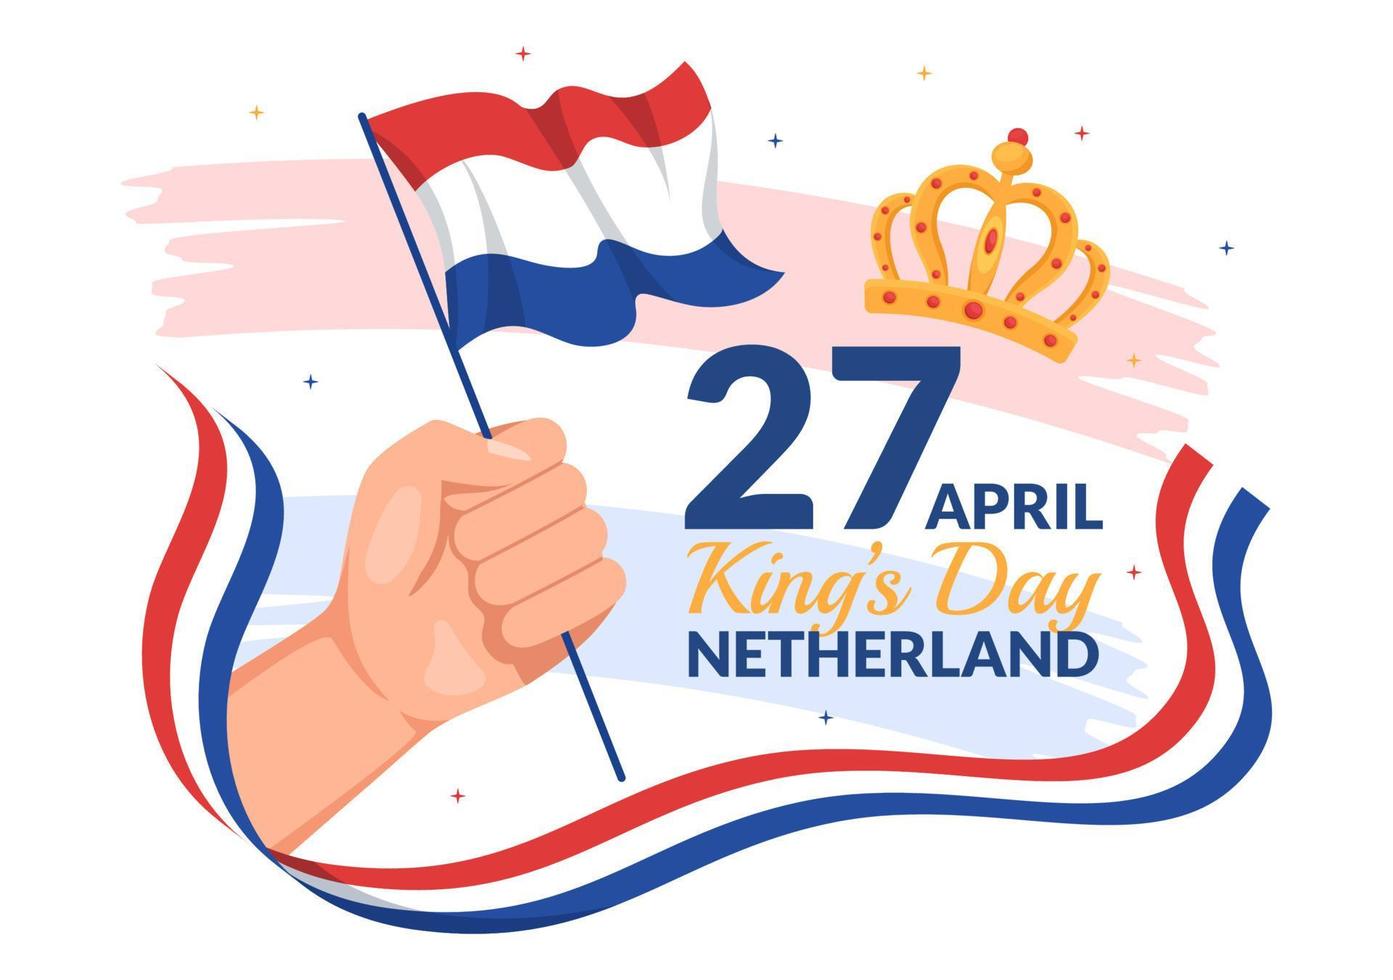 contento reyes Países Bajos día ilustración con ondulación banderas y Rey celebracion para web bandera o aterrizaje página en plano dibujos animados mano dibujado plantillas vector